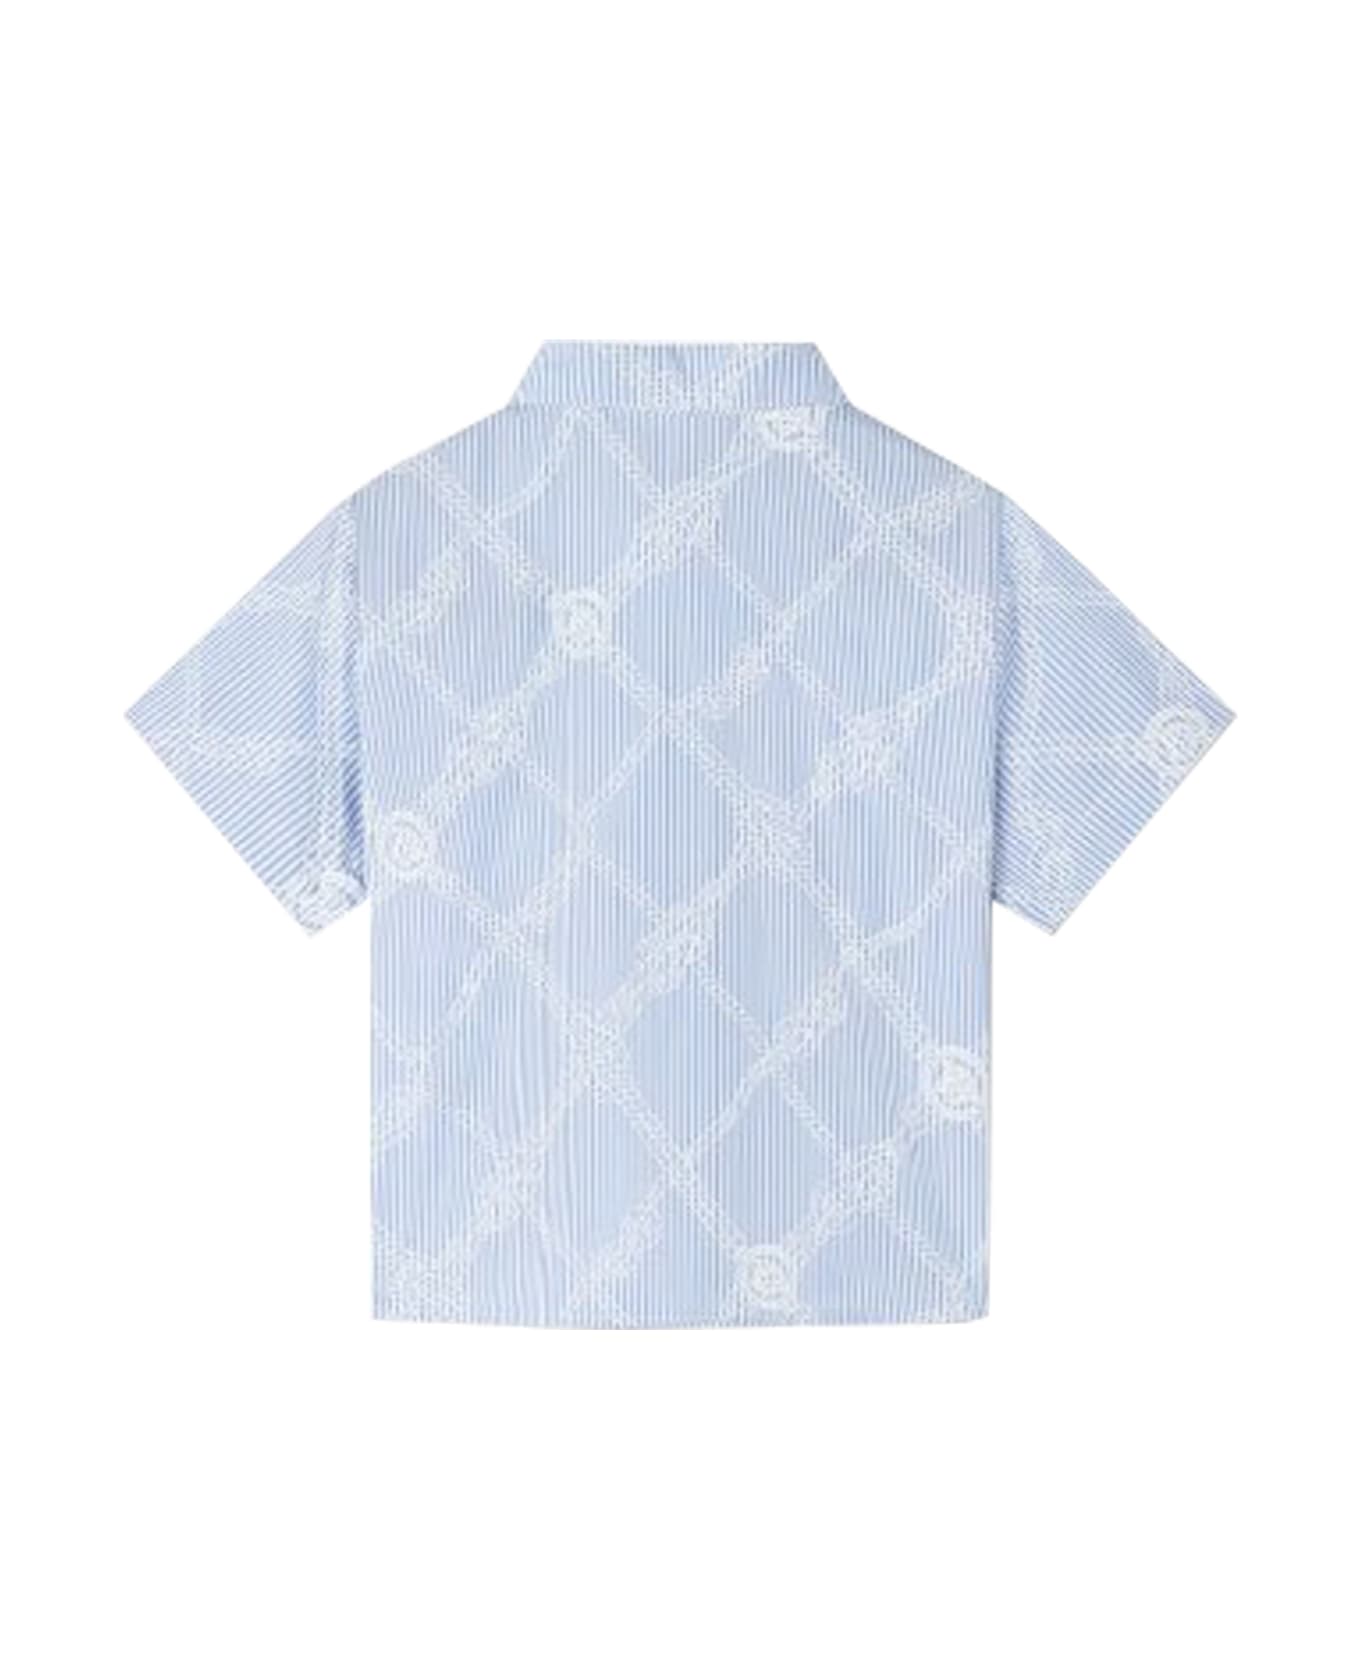 Versace Shirt - Heavenly シャツ